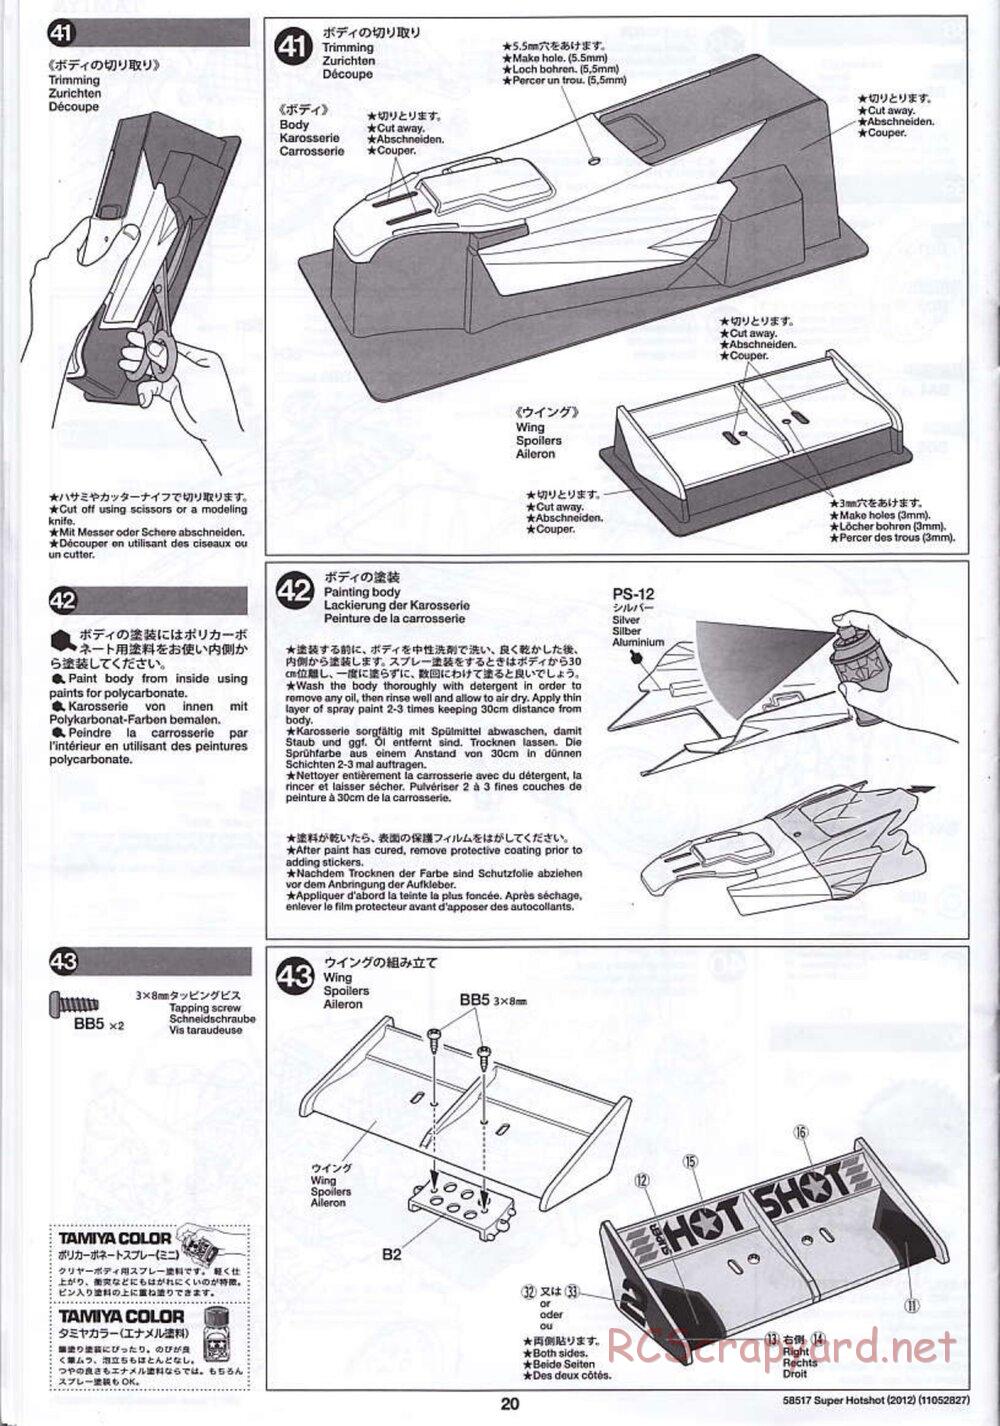 Tamiya - Super Hotshot 2012 - HS Chassis - Manual - Page 20